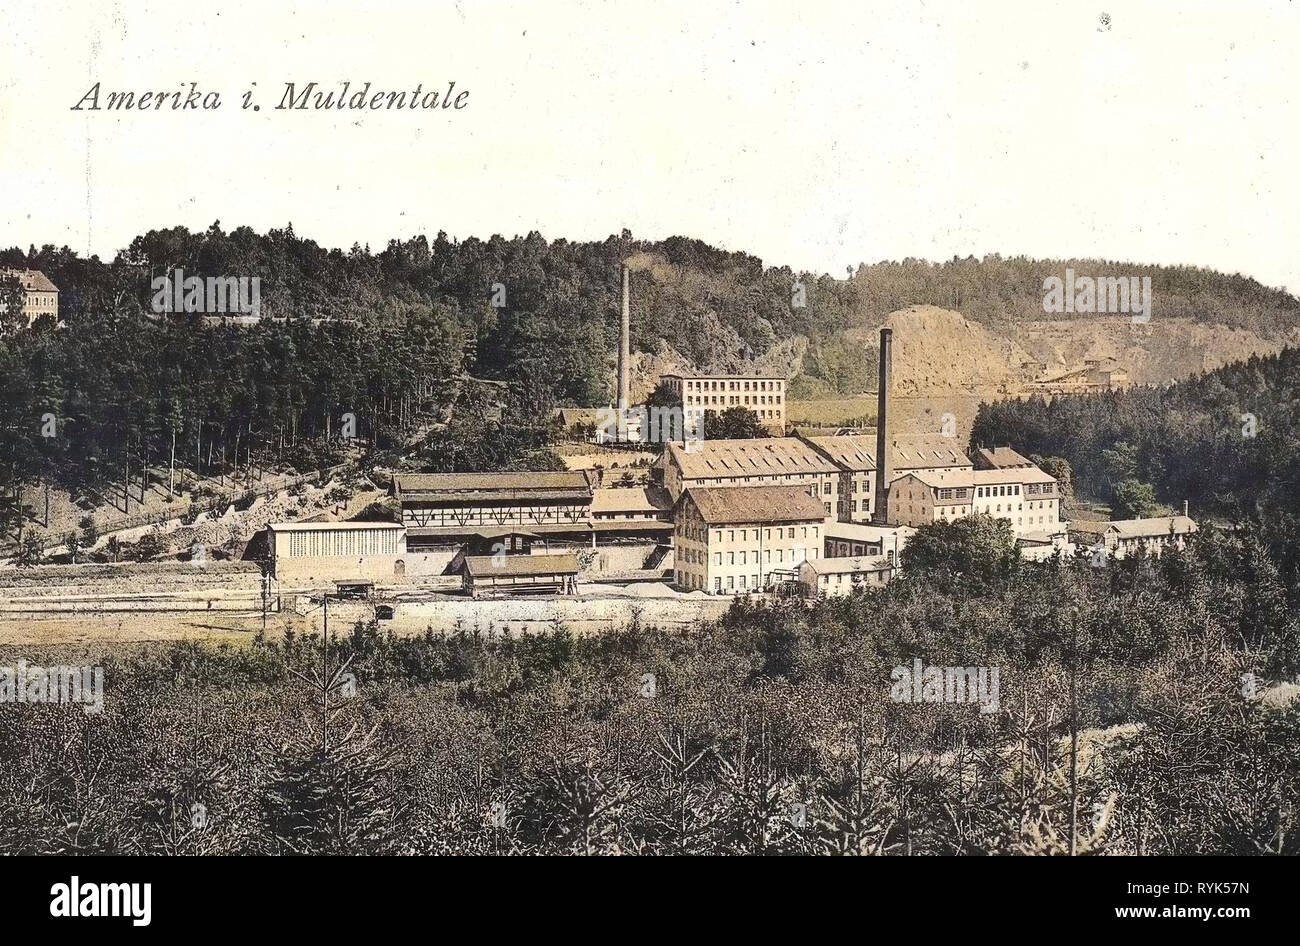 Buildings in Landkreis Mittelsachsen, Postcards of buildings in Landkreis Mittelsachsen, Amerika (Penig), 1915, Landkreis Mittelsachsen, Amerika, Amerika im Muldental, Germany Stock Photo